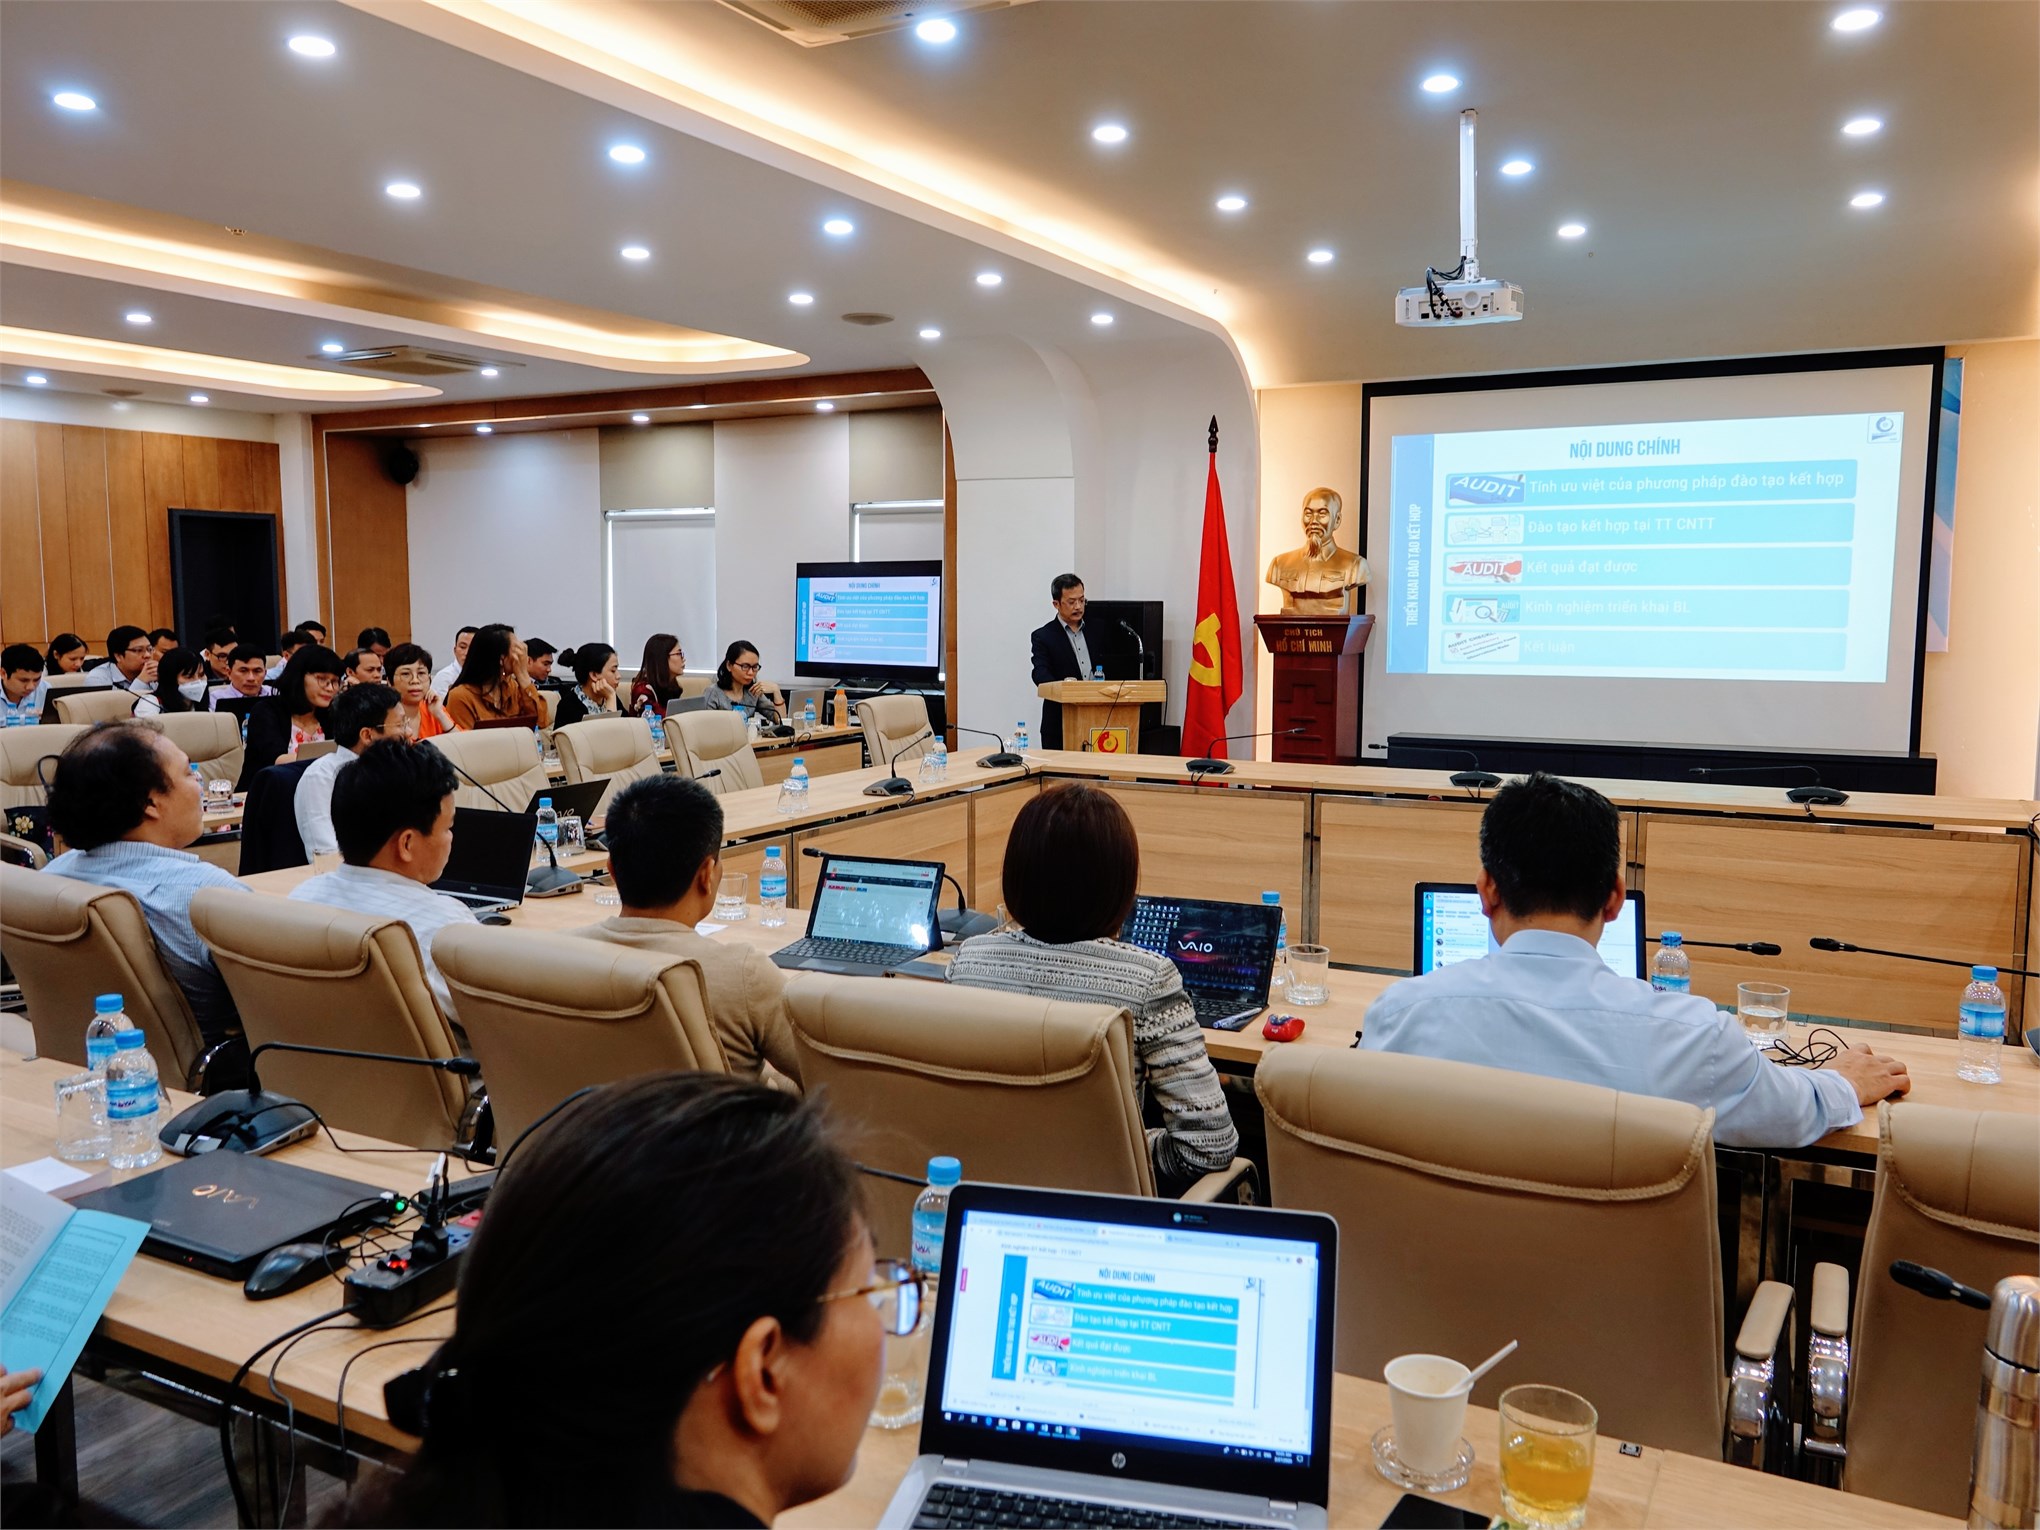 Đại học Công nghiệp Hà Nội tổ chức tập huấn xây dựng bài giảng điện tử